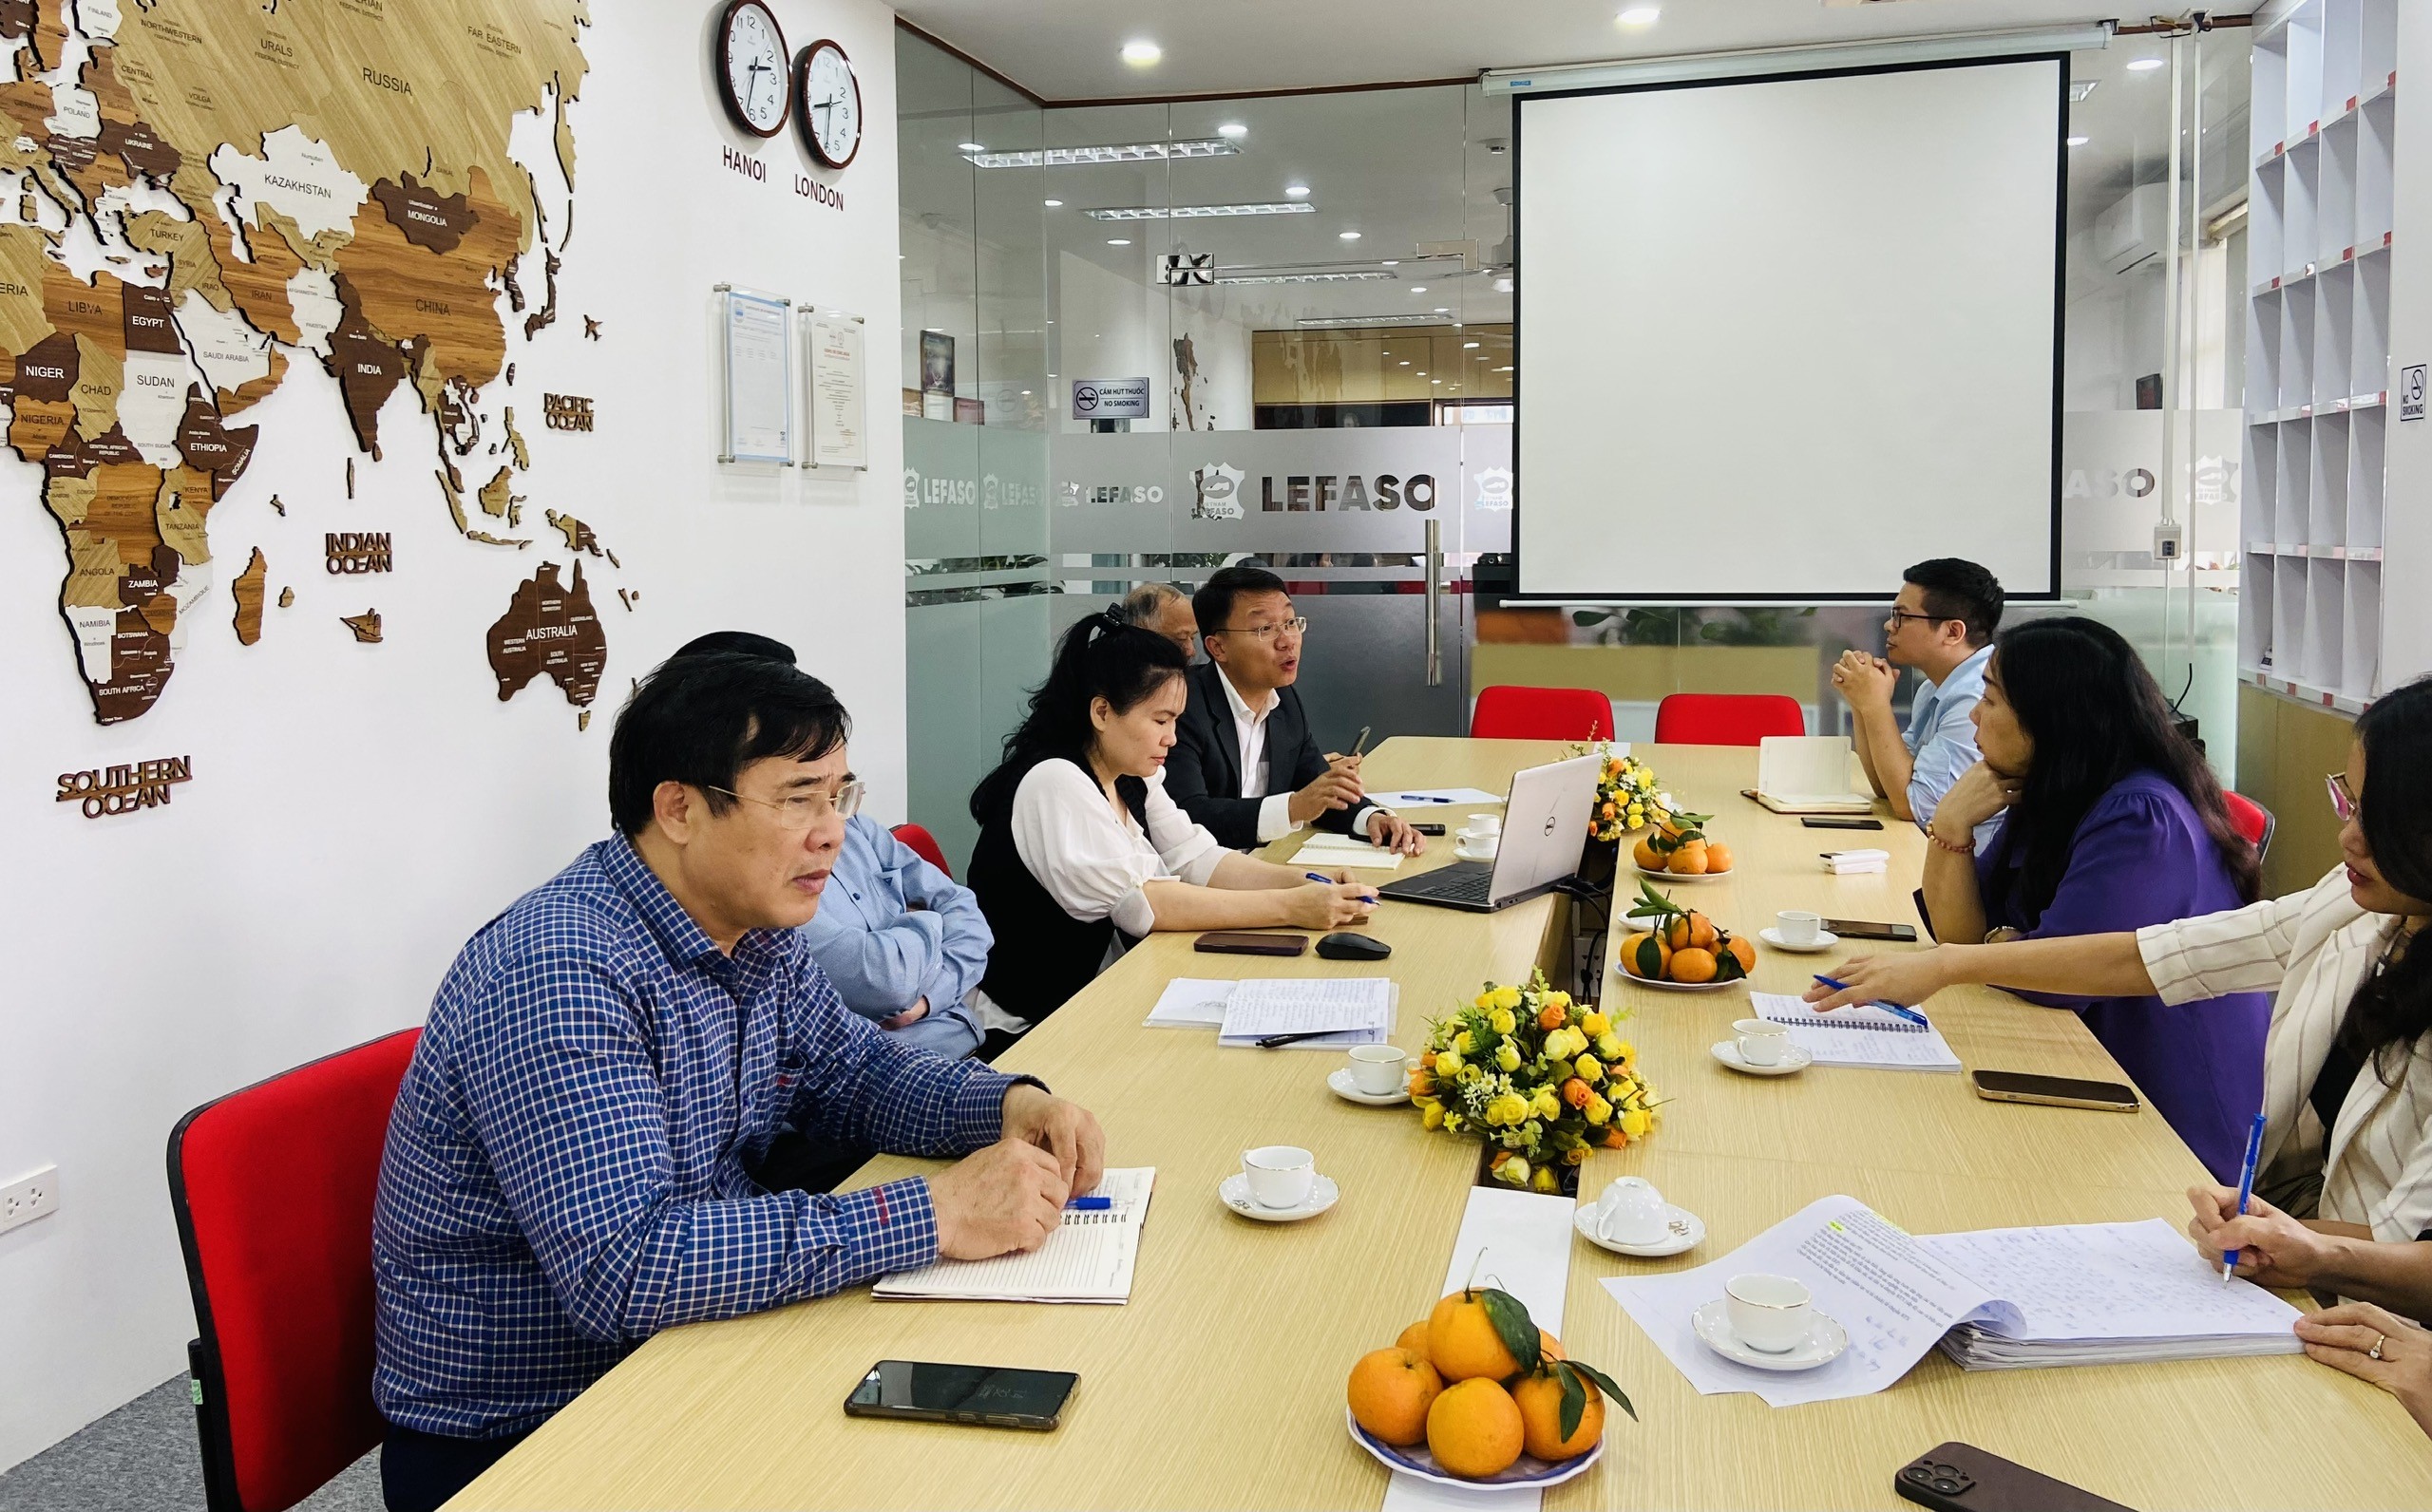 Hiệp hội Da Giầy Túi xách Việt Nam xin gửi tới Quý doanh nghiệp Phiếu khảo sát thông tin về hoạt động xuất nhập khẩu tại chỗ của các DN